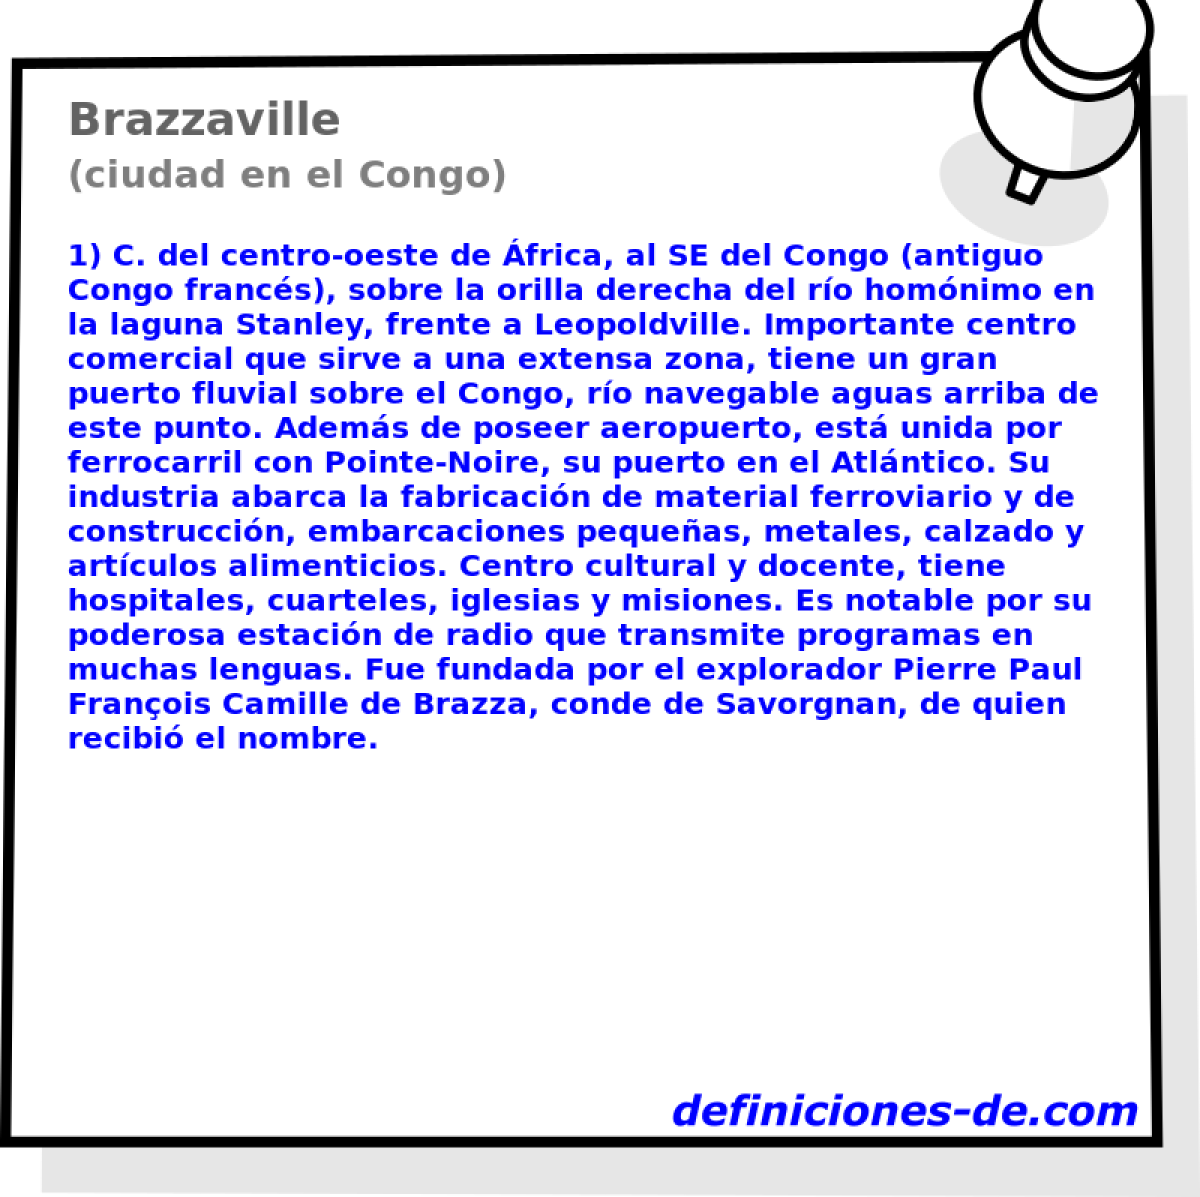 Brazzaville (ciudad en el Congo)